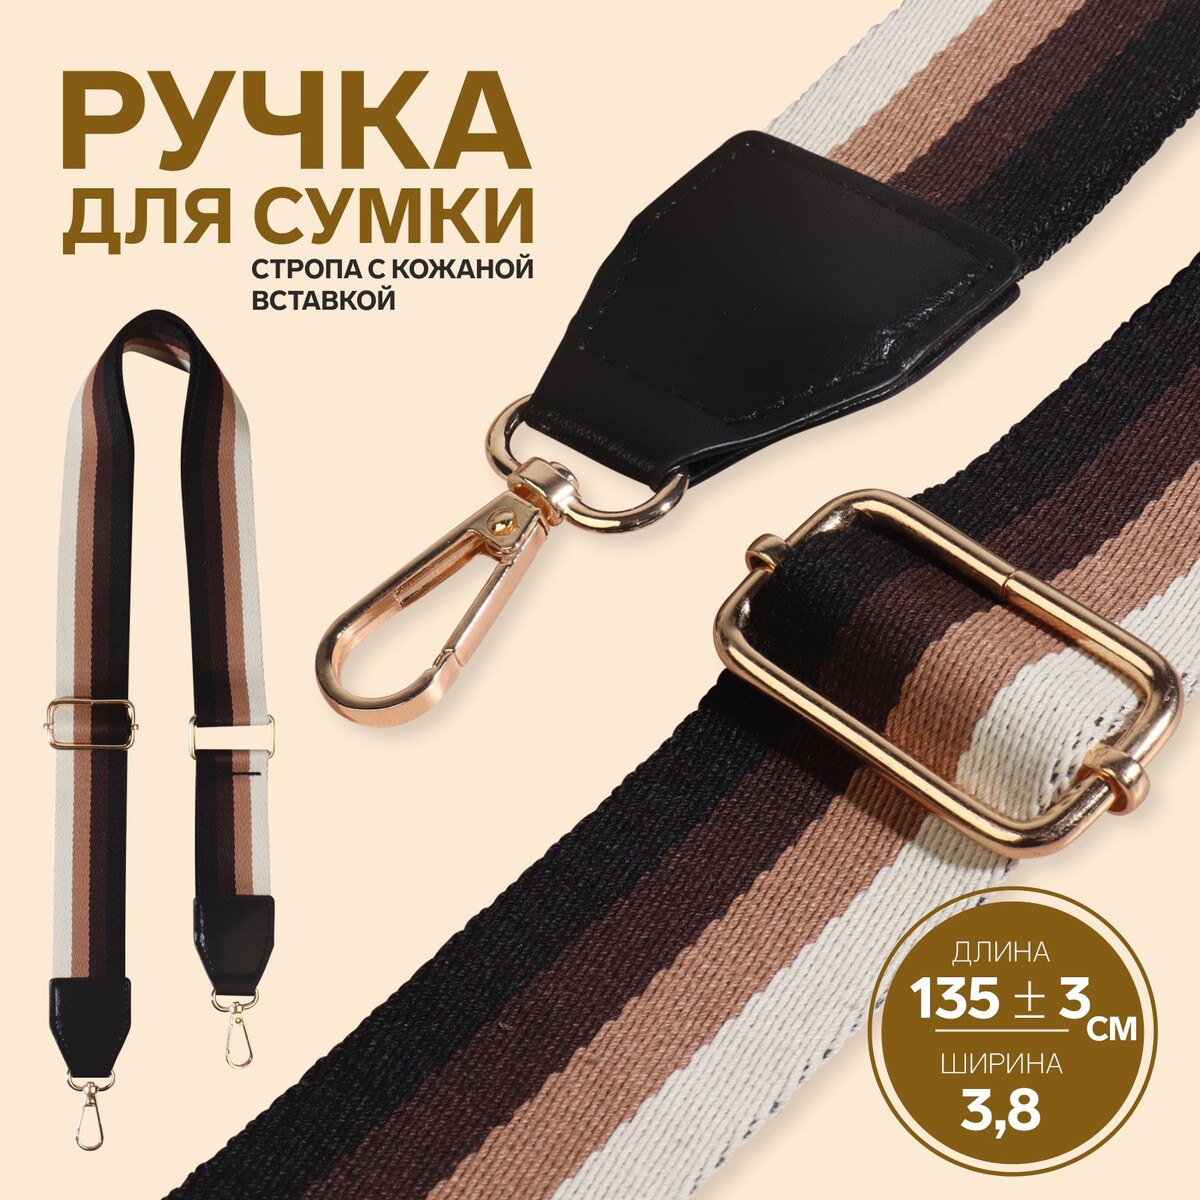 Ручка для сумки, стропа с кожаной вставкой, 139 ± 3 × 3,8 см, цвет черный/коричневый/песочный/золотой